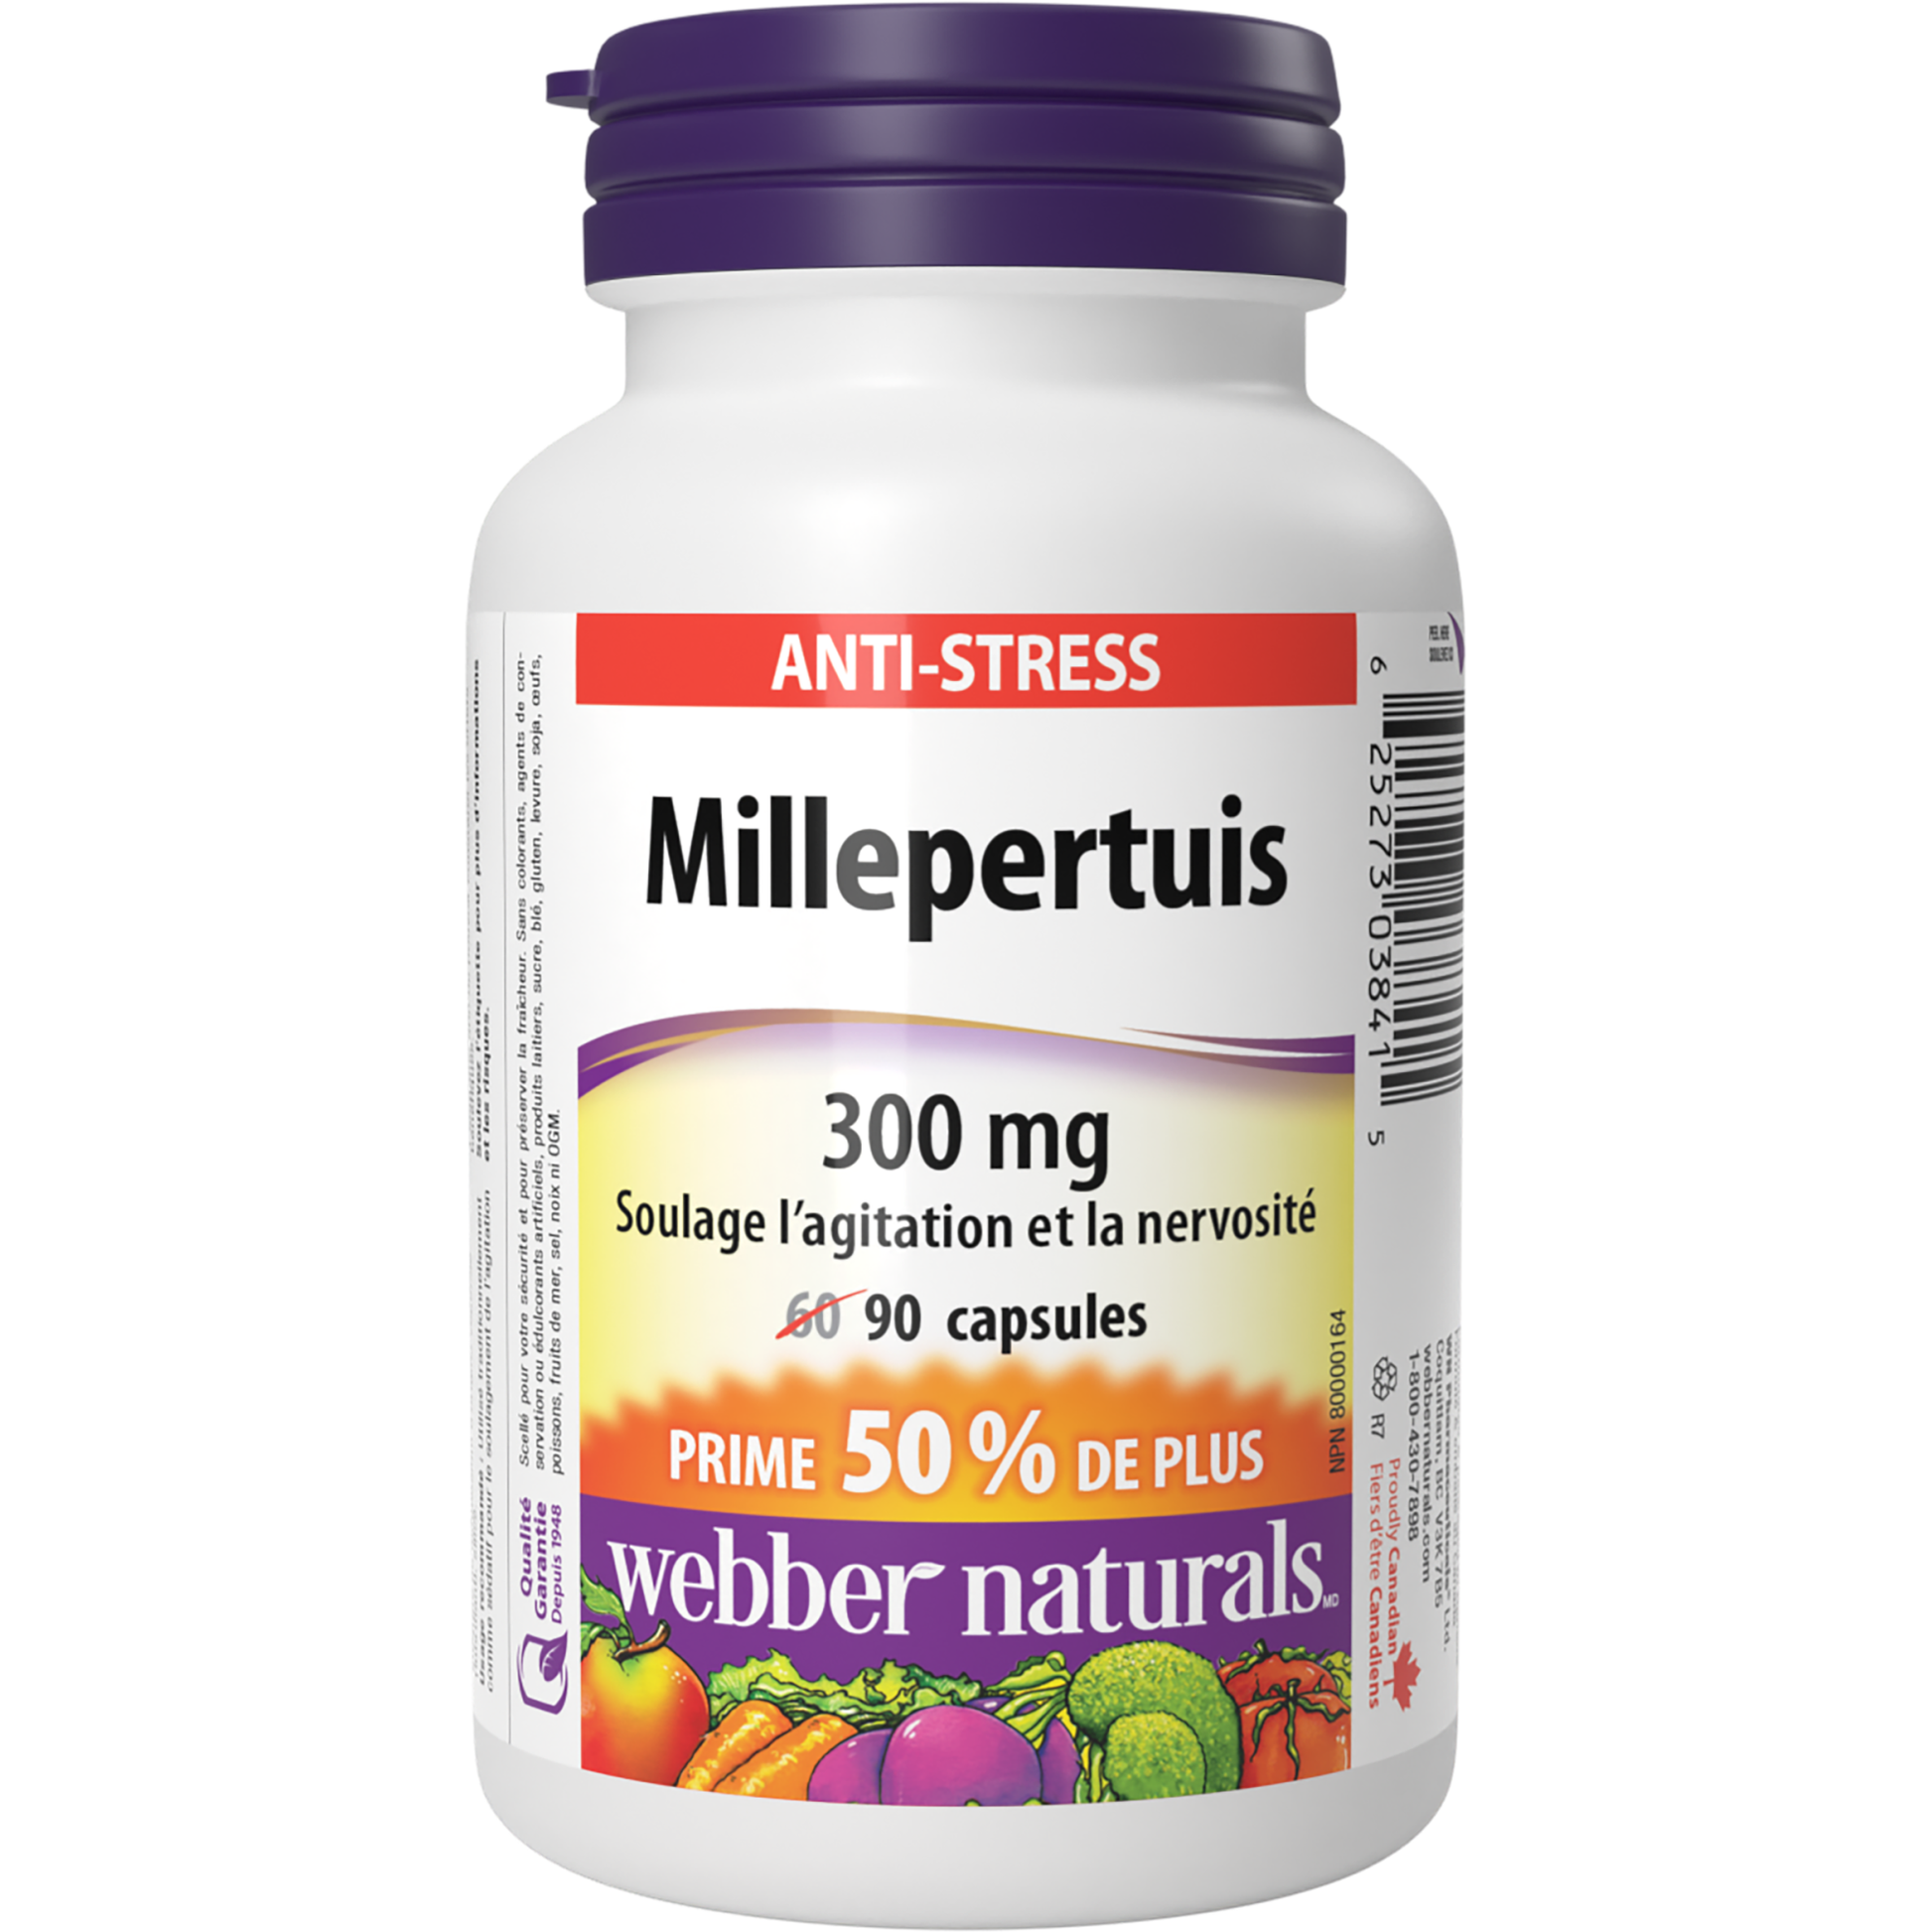 Millepertuis 300 mg for Webber Naturals|v|hi-res|WN3841